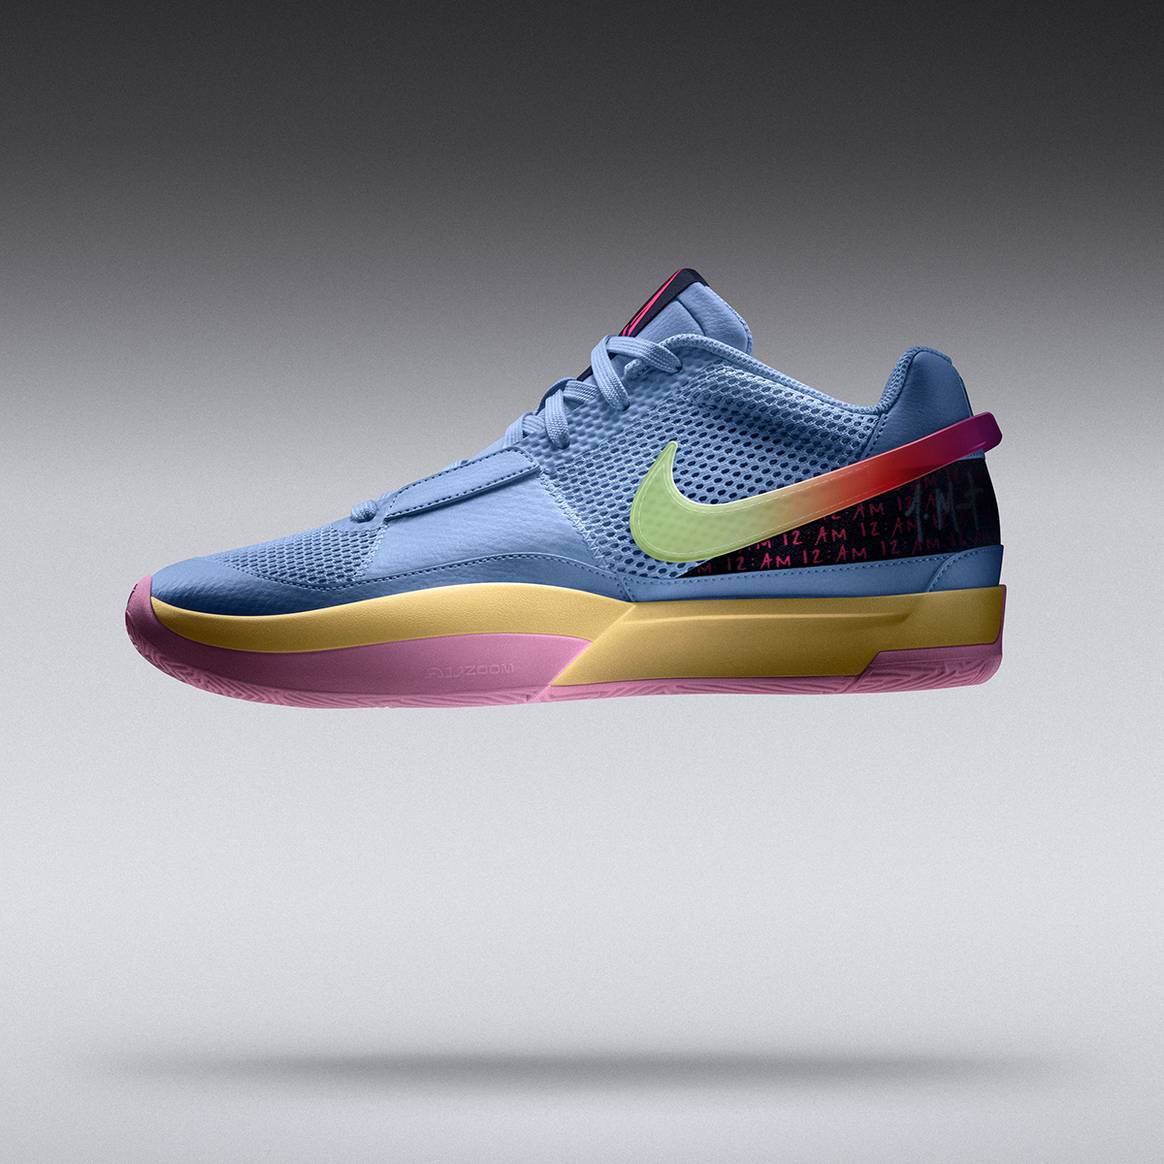 Photo Credits: Primeras zapatillas “Nike Ja” 1 diseñadas por Nike para Ja Morant. Fotografía de cortesía.